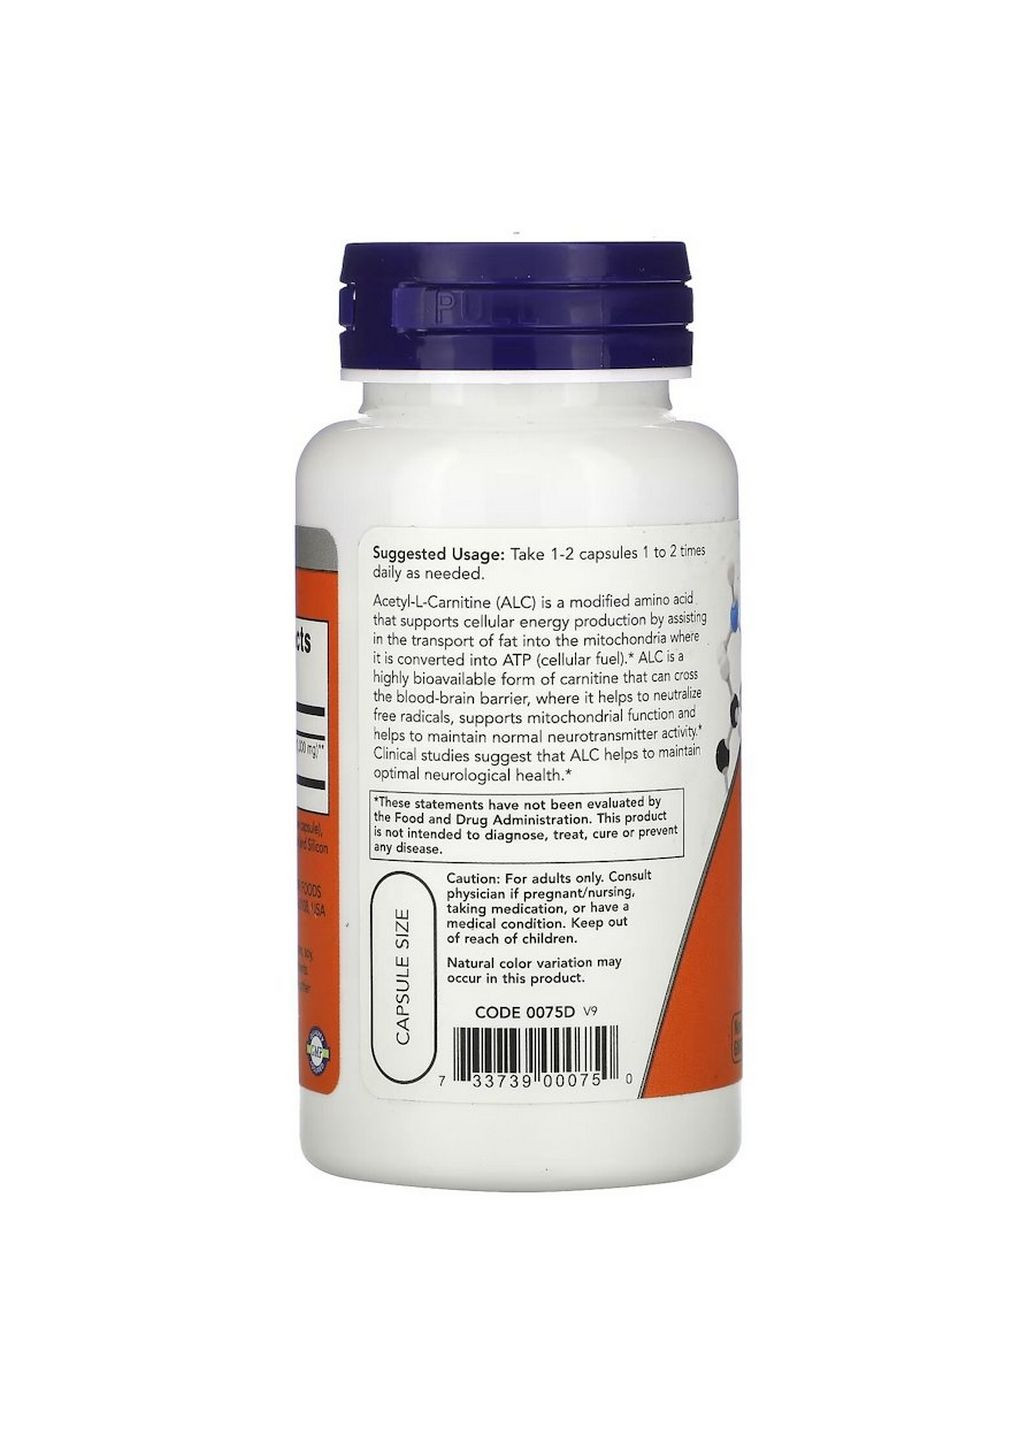 Жироспалювач Acetyl-L-Carnitine 500 mg, 50 вегакапсул Now (293480891)